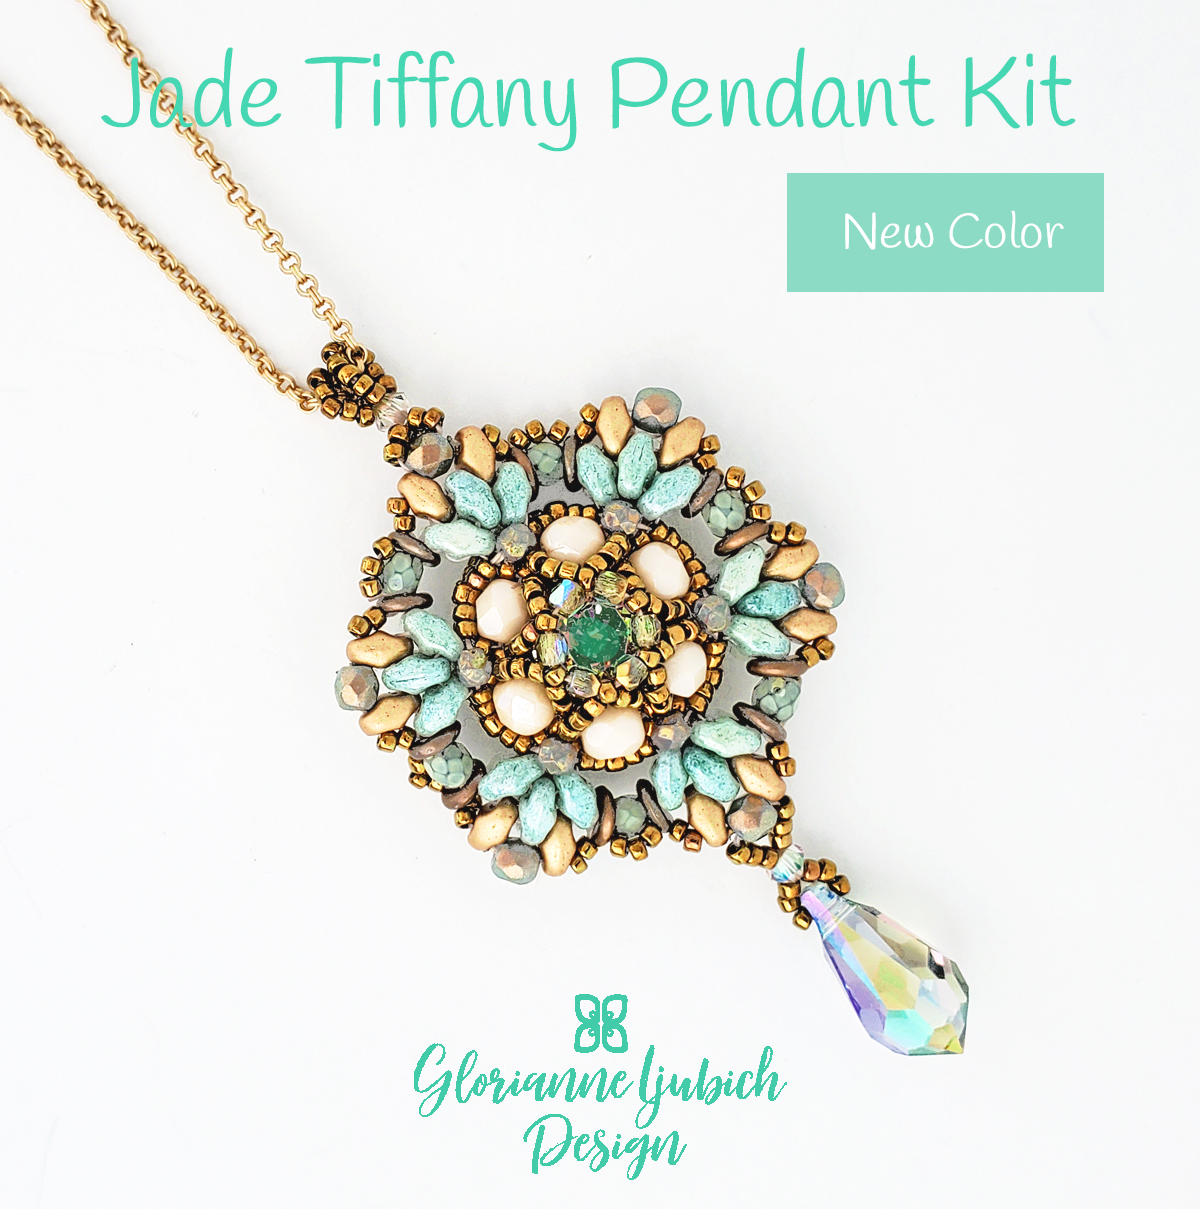 Jade Tiffany Pendant Beading Kit